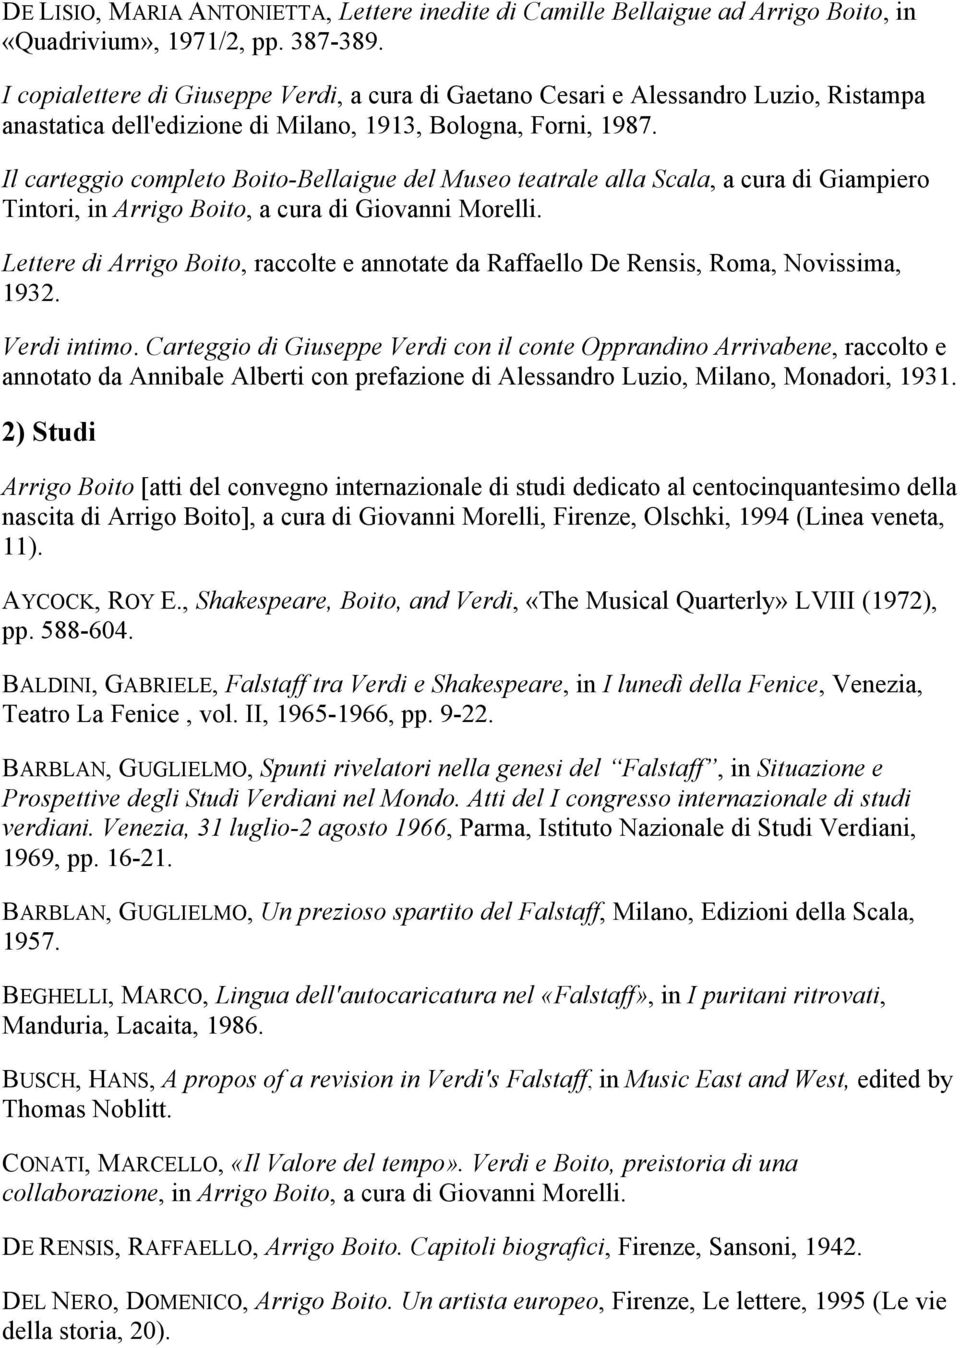 Il carteggio completo Boito-Bellaigue del Museo teatrale alla Scala, a cura di Giampiero Tintori, in Arrigo Boito, a cura di Giovanni Morelli.